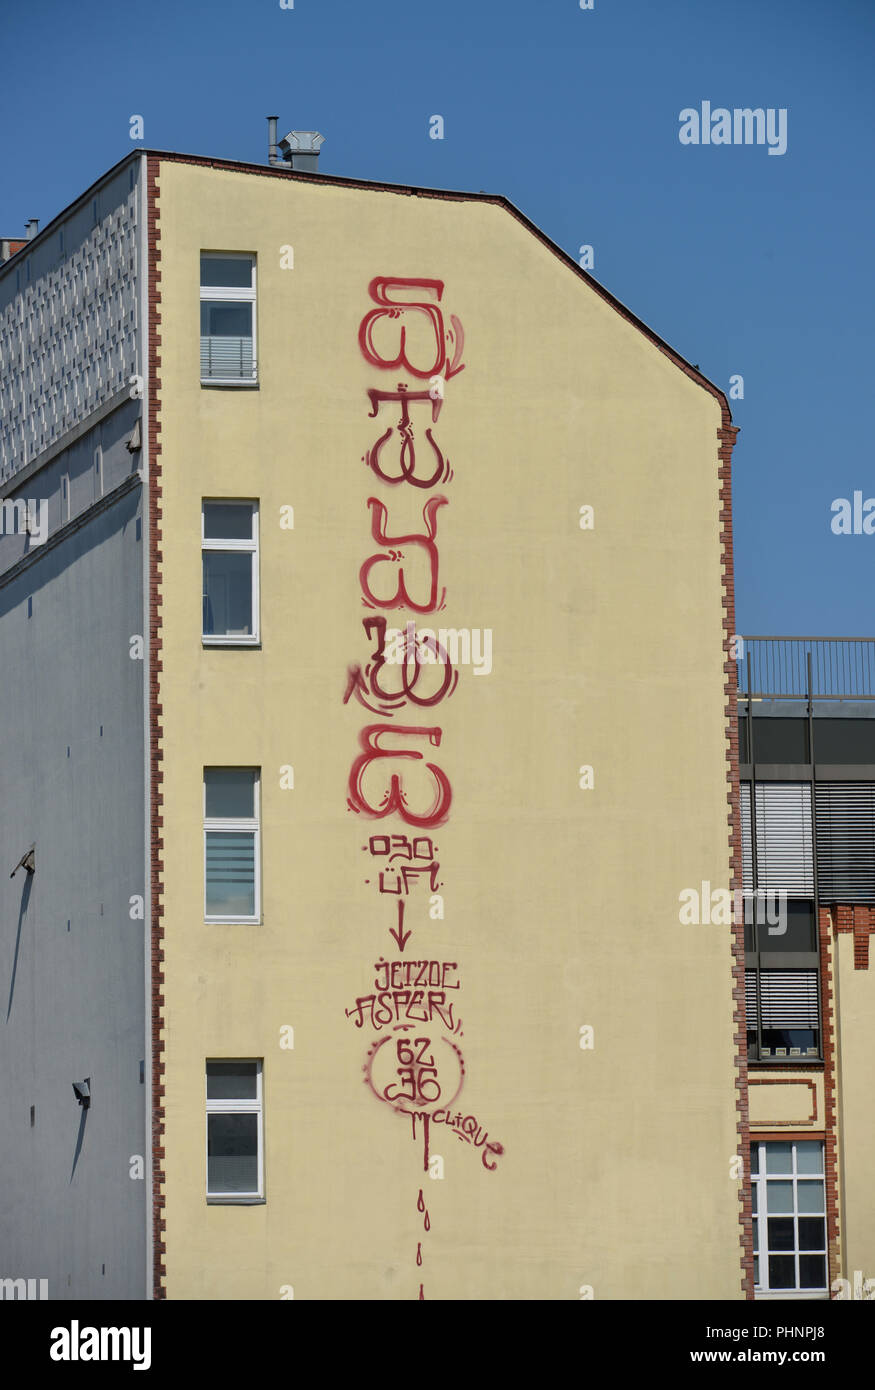 Brandmauer Graffiti, Crellestrasse, Schoeneberg, Berlin, Deutschland Stock Photo